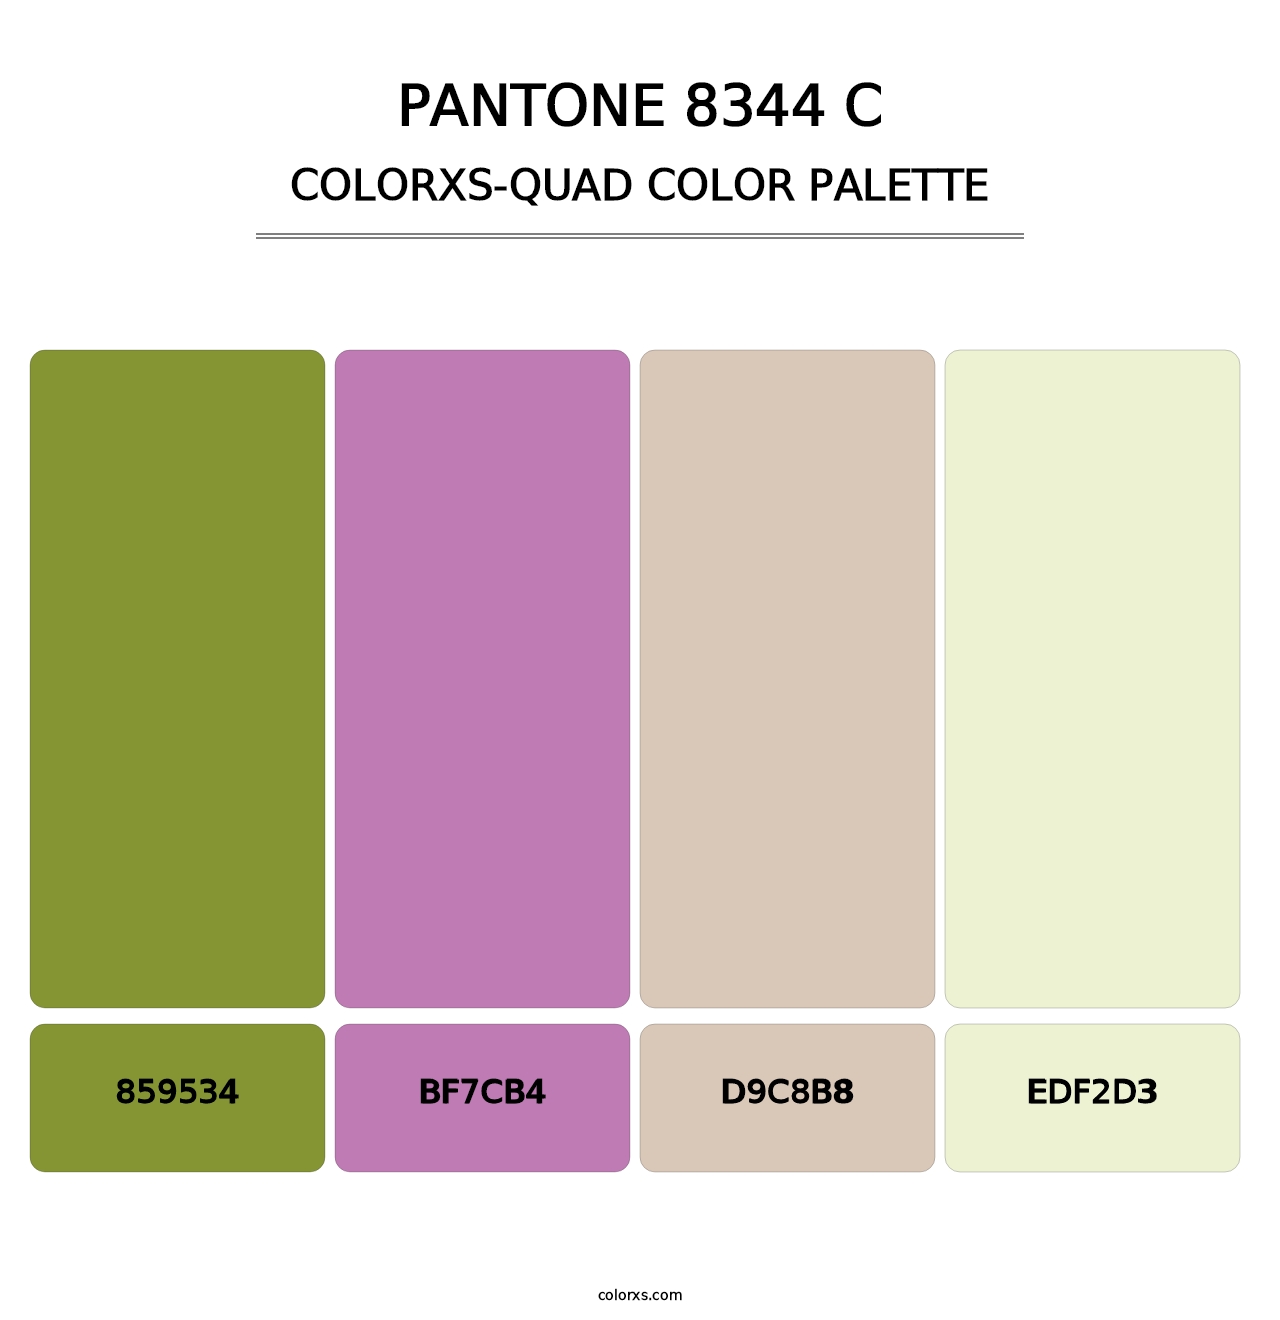 PANTONE 8344 C - Colorxs Quad Palette